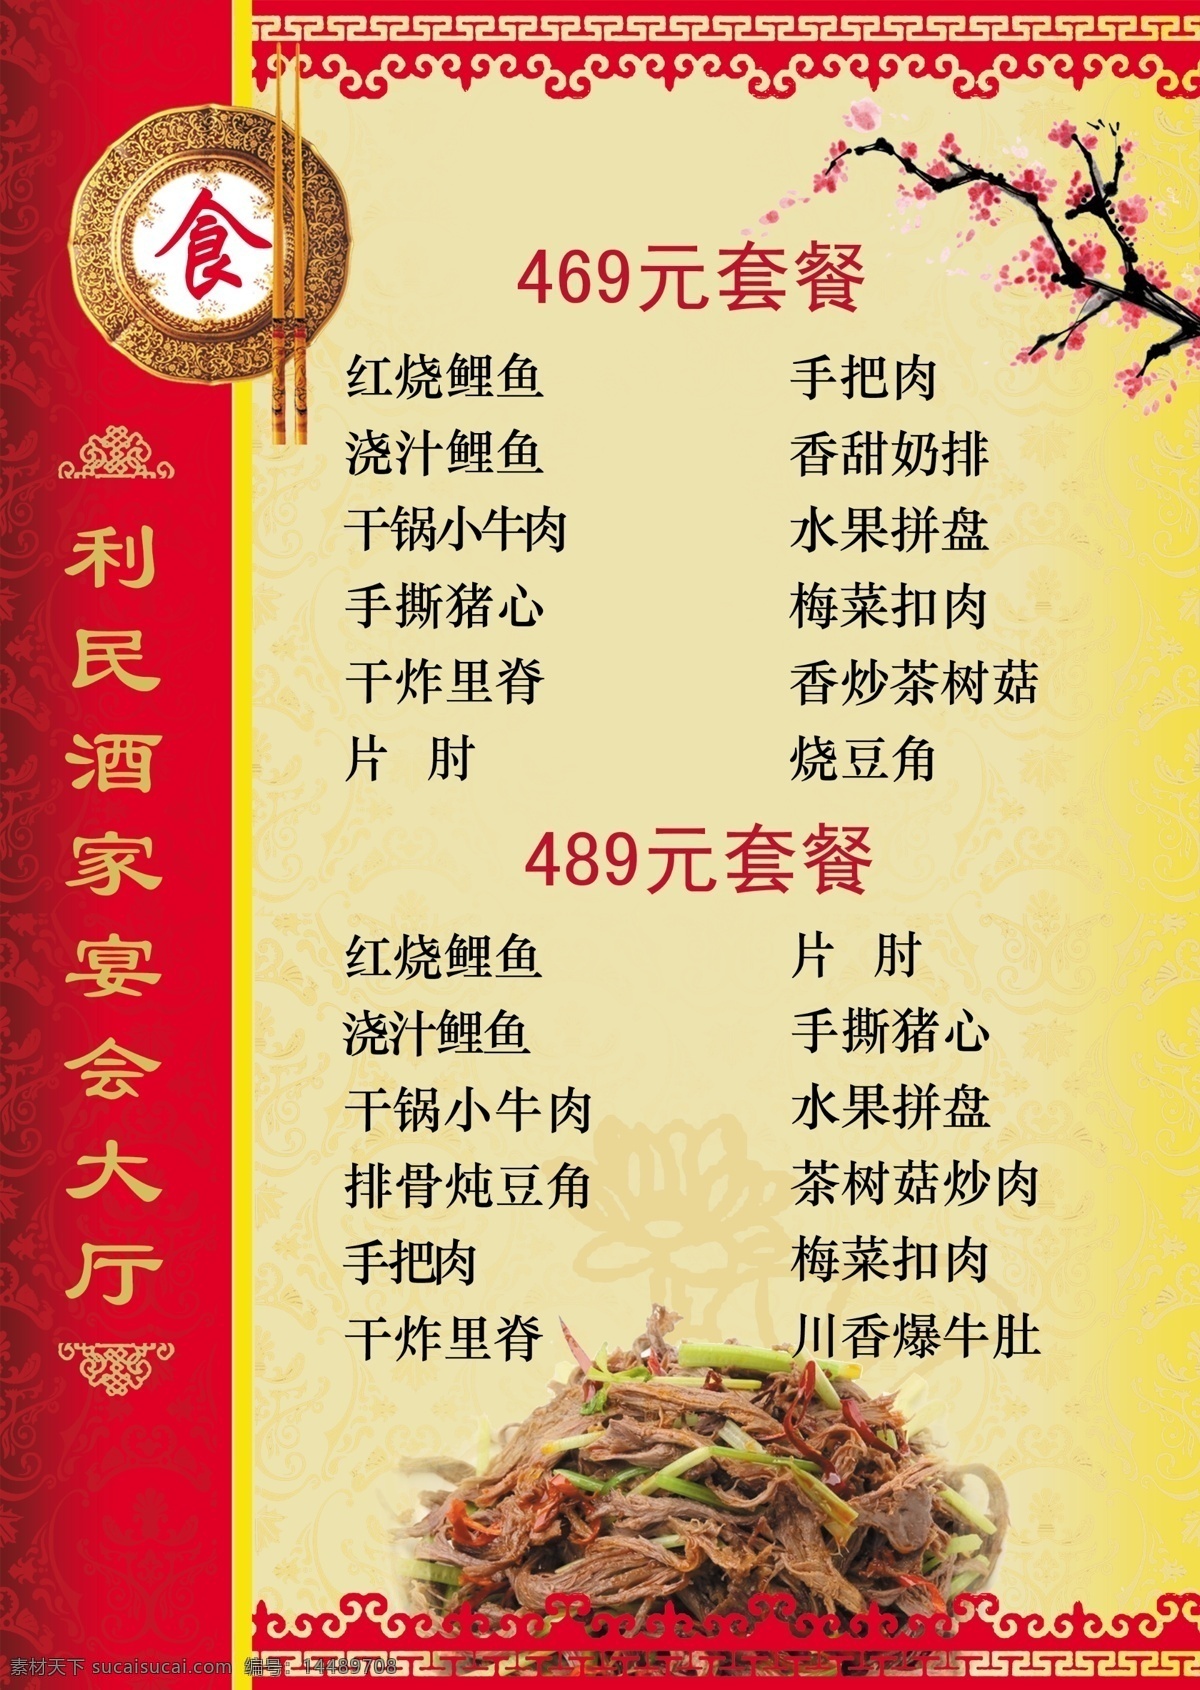 菜谱 婚宴菜单 内页 点菜单 酒店 套餐 分层 中国风 红色 菜单菜谱